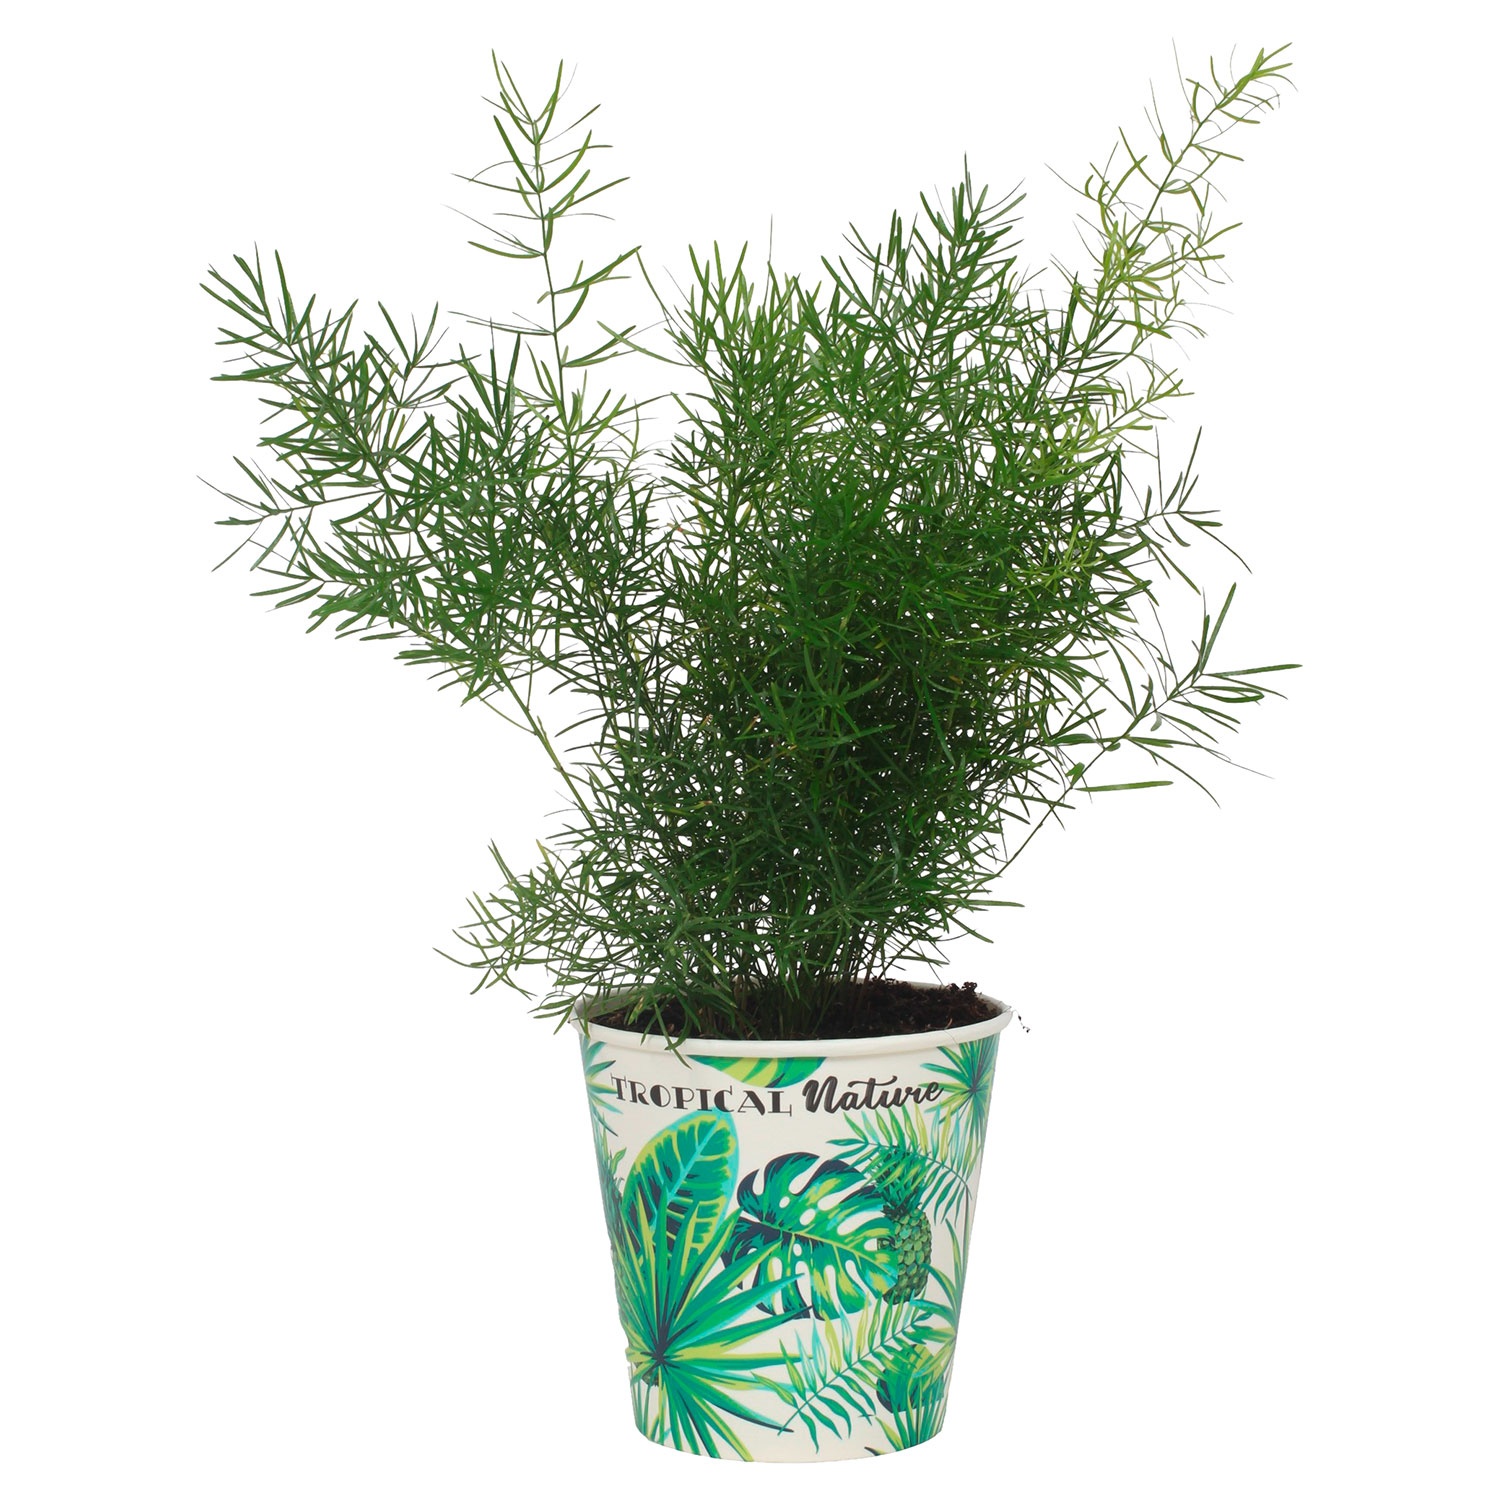 GARDENLINE® Grünpflanze Tropical Nature